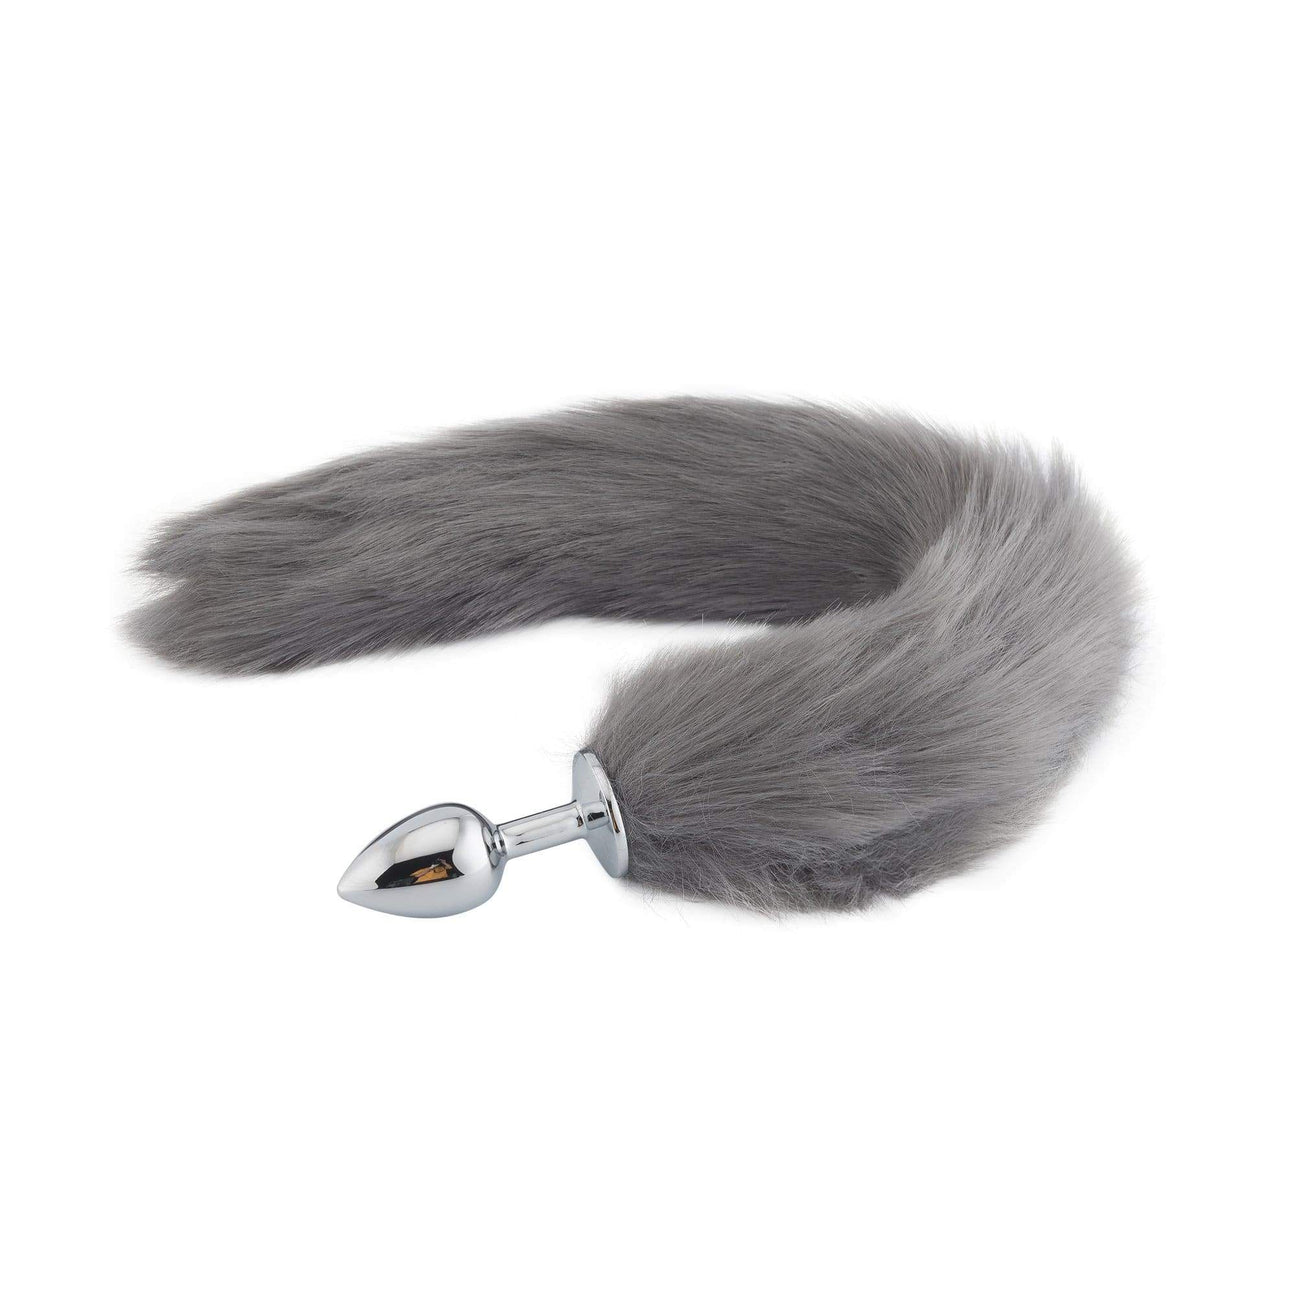 18" Grey Fox Tail Plug - Thorn & Feather Sex Toy Canada